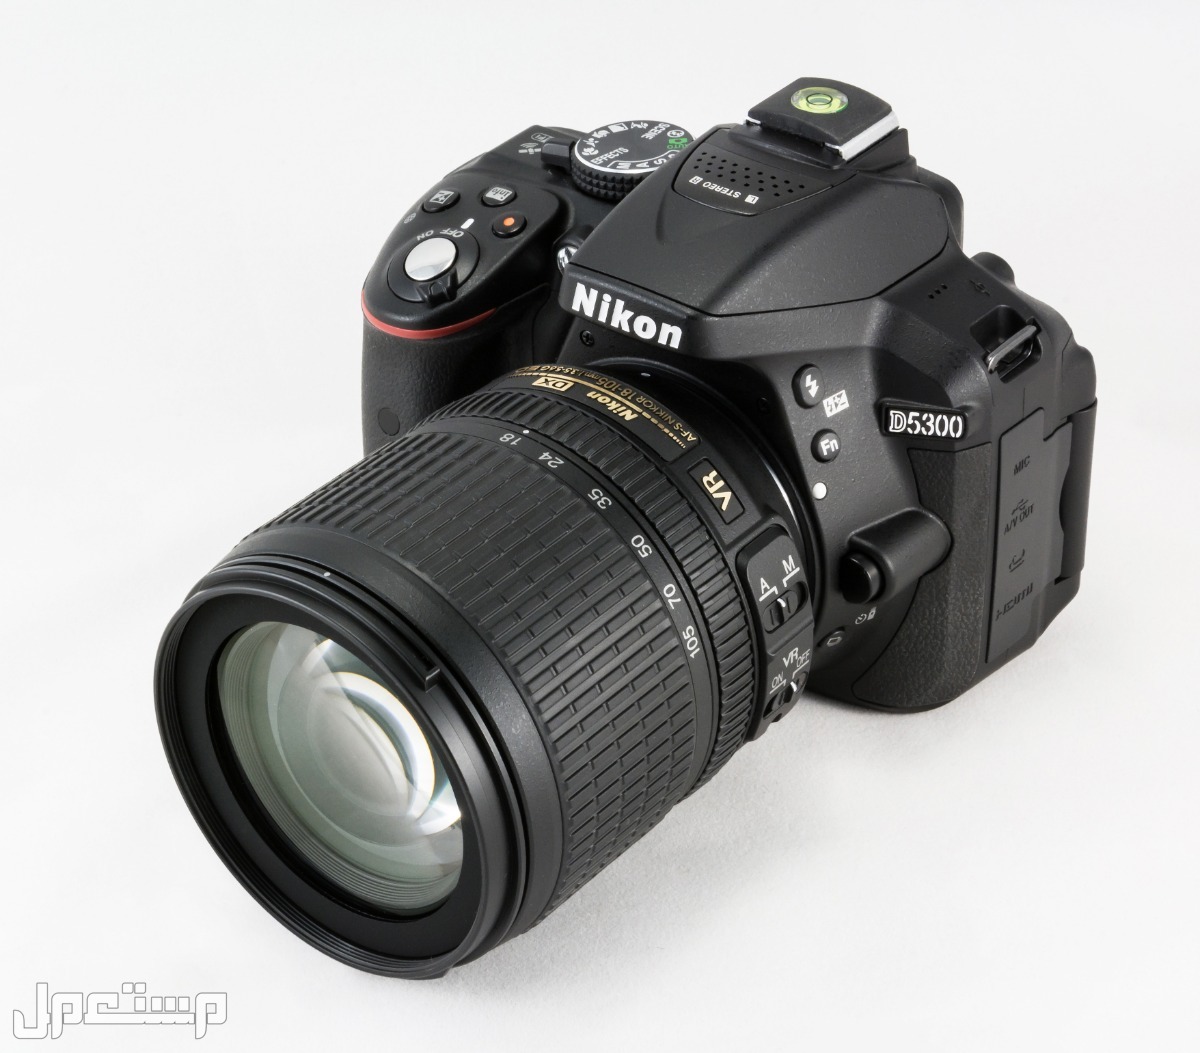 مواصفات ومميزات وأسعار أفضل أنواع كاميرات نيكون للمحترفين في الجزائر كاميرا Nikon D5300